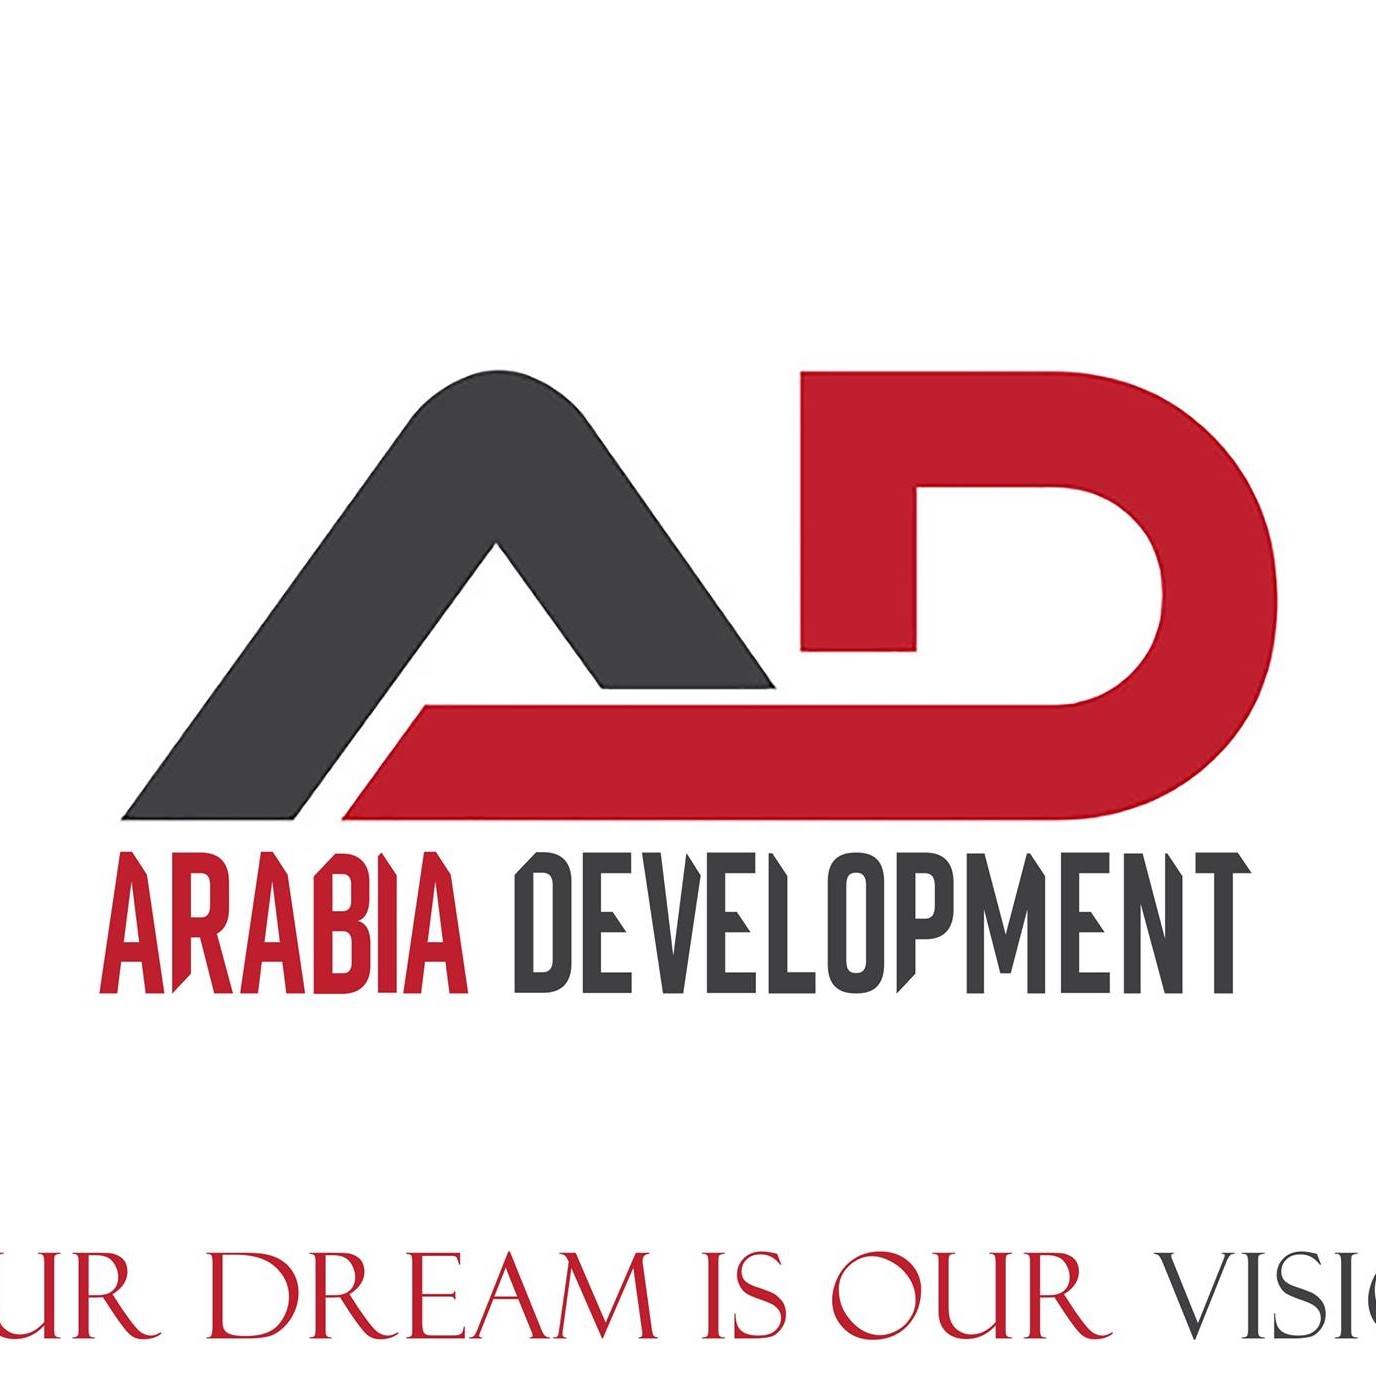 Arabia developments